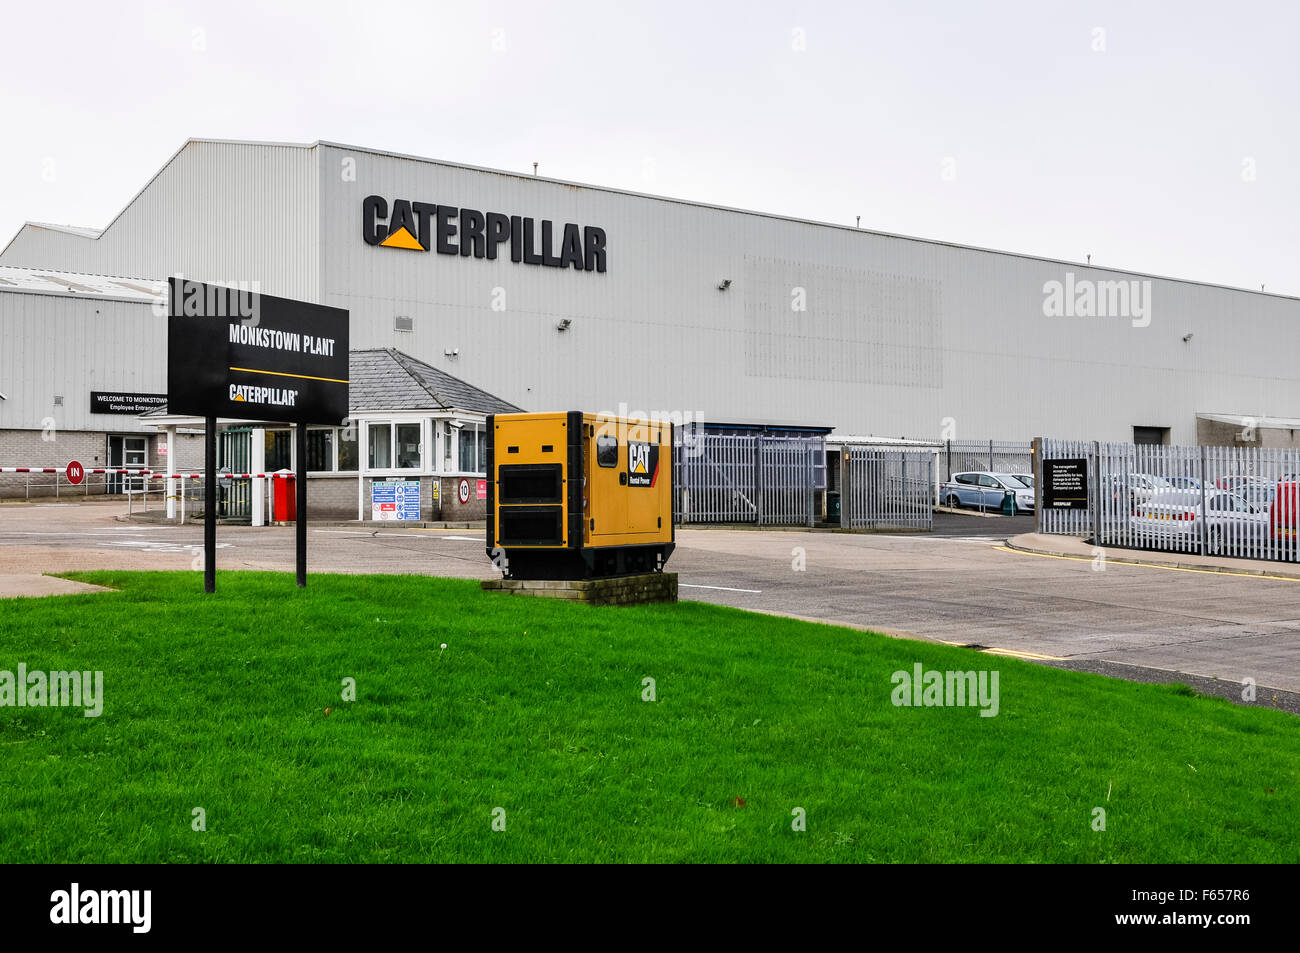 L'Irlande du Nord. 12 novembre, 2015. L'usine Caterpillar à Monkstown, Newtownabbey, anciennement FG Wilson, annoncer la perte de 100 emplois sur trois sites en Irlande du Nord. Crédit : Stephen Barnes/Alamy Live News Banque D'Images